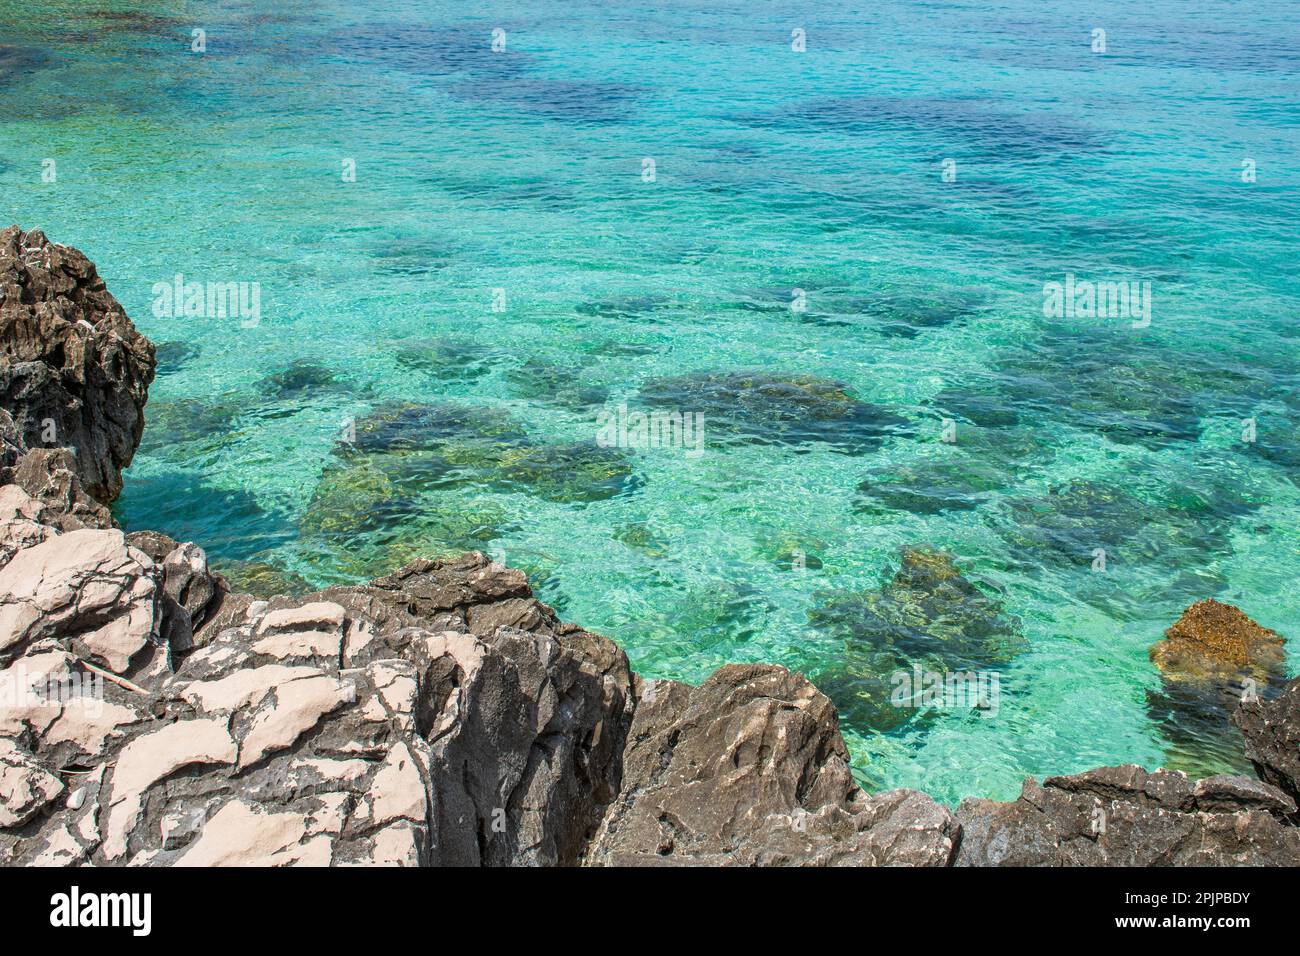 Ein ruhiges türkisfarbenes Gewässer mit einer felsigen Küste im Vordergrund. Stockfoto